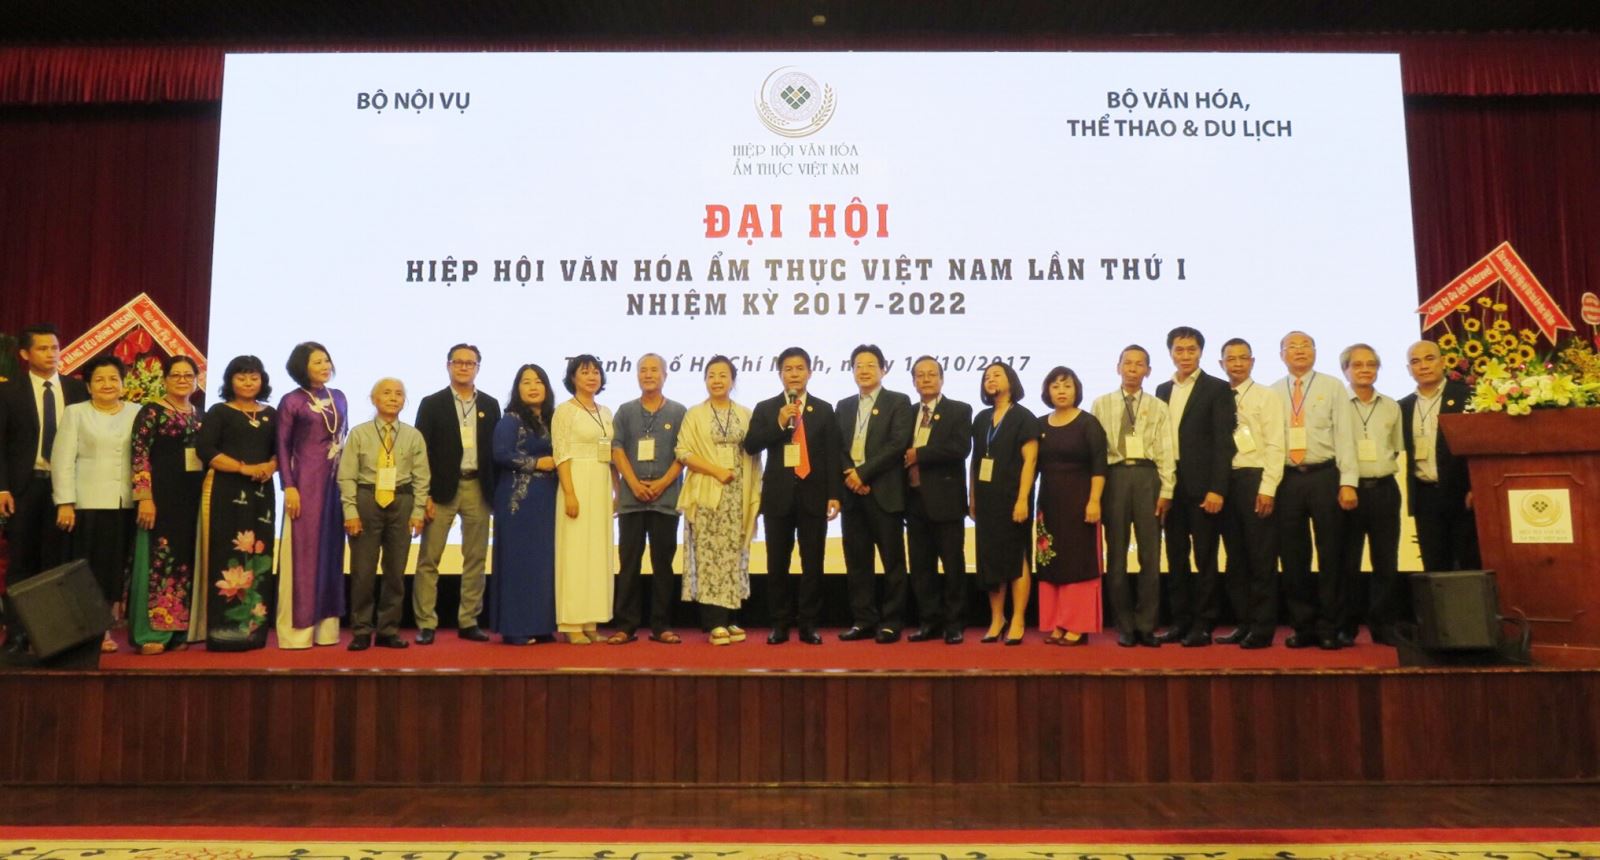 Ông Nguyễn Quốc Kỳ được bầu làm Chủ tịch Hiệp hội Văn hóa Ẩm thực Việt Nam